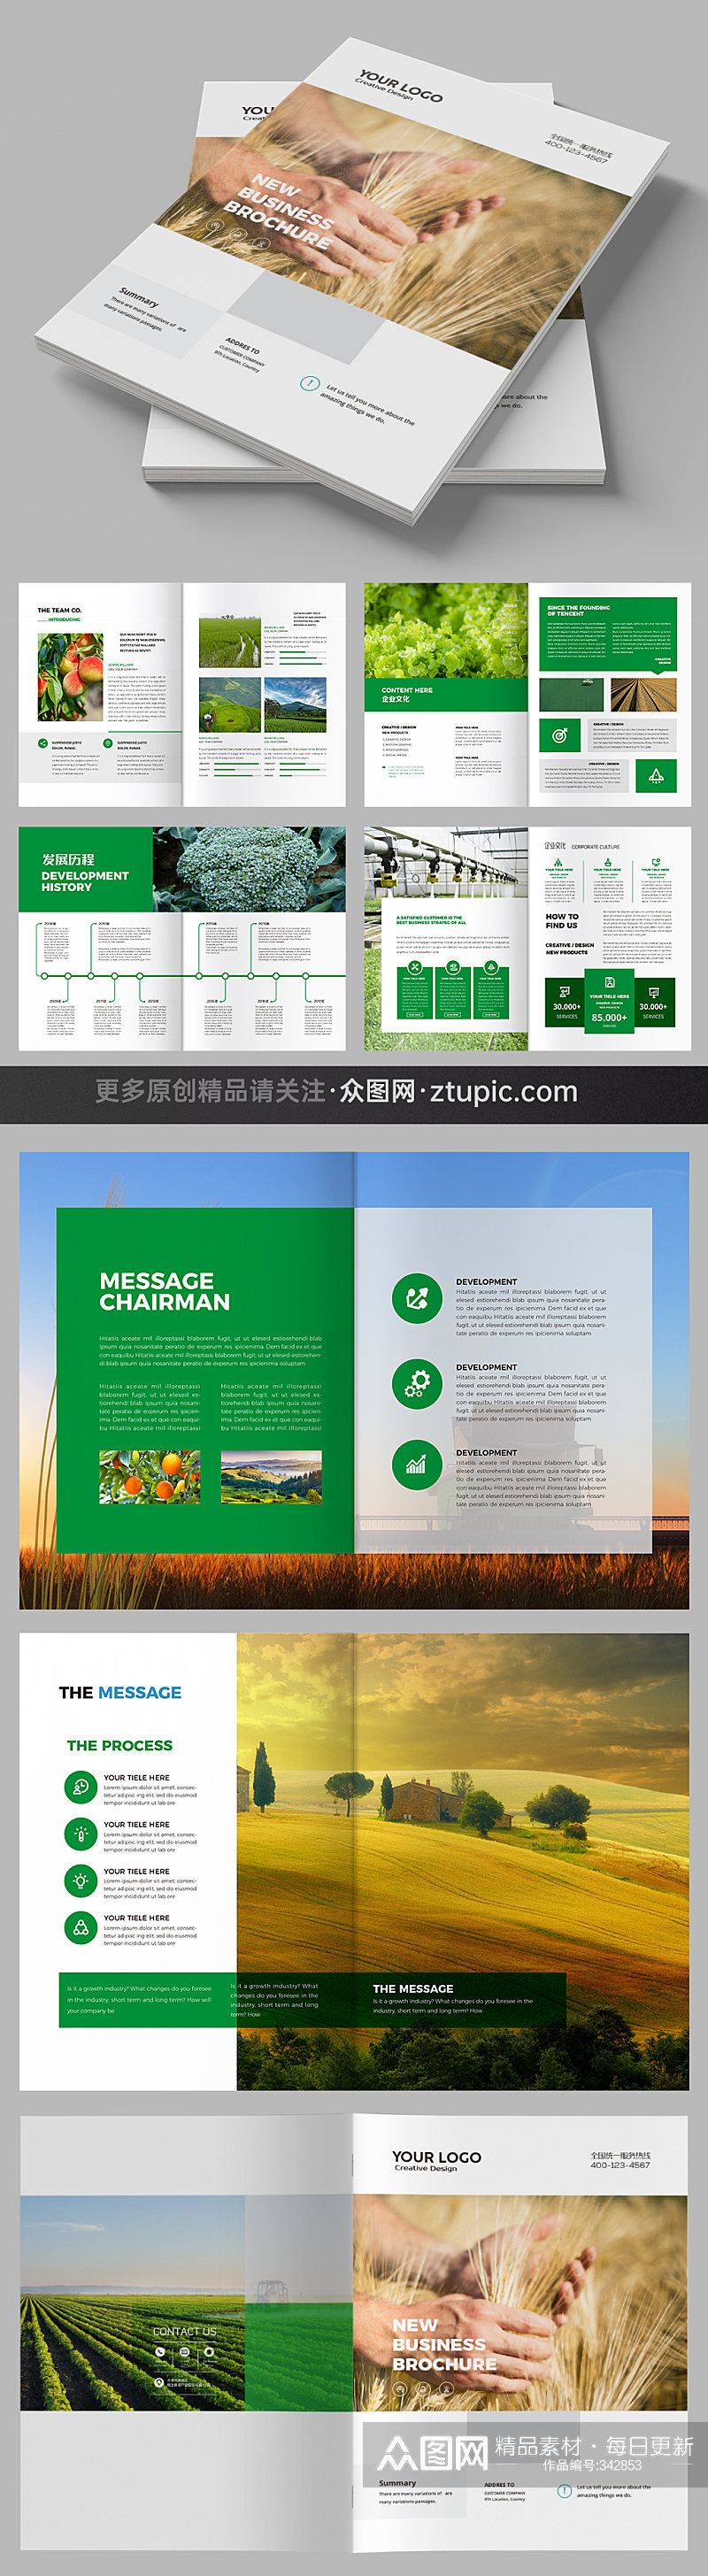 农业画册合作社宣传册模板素材